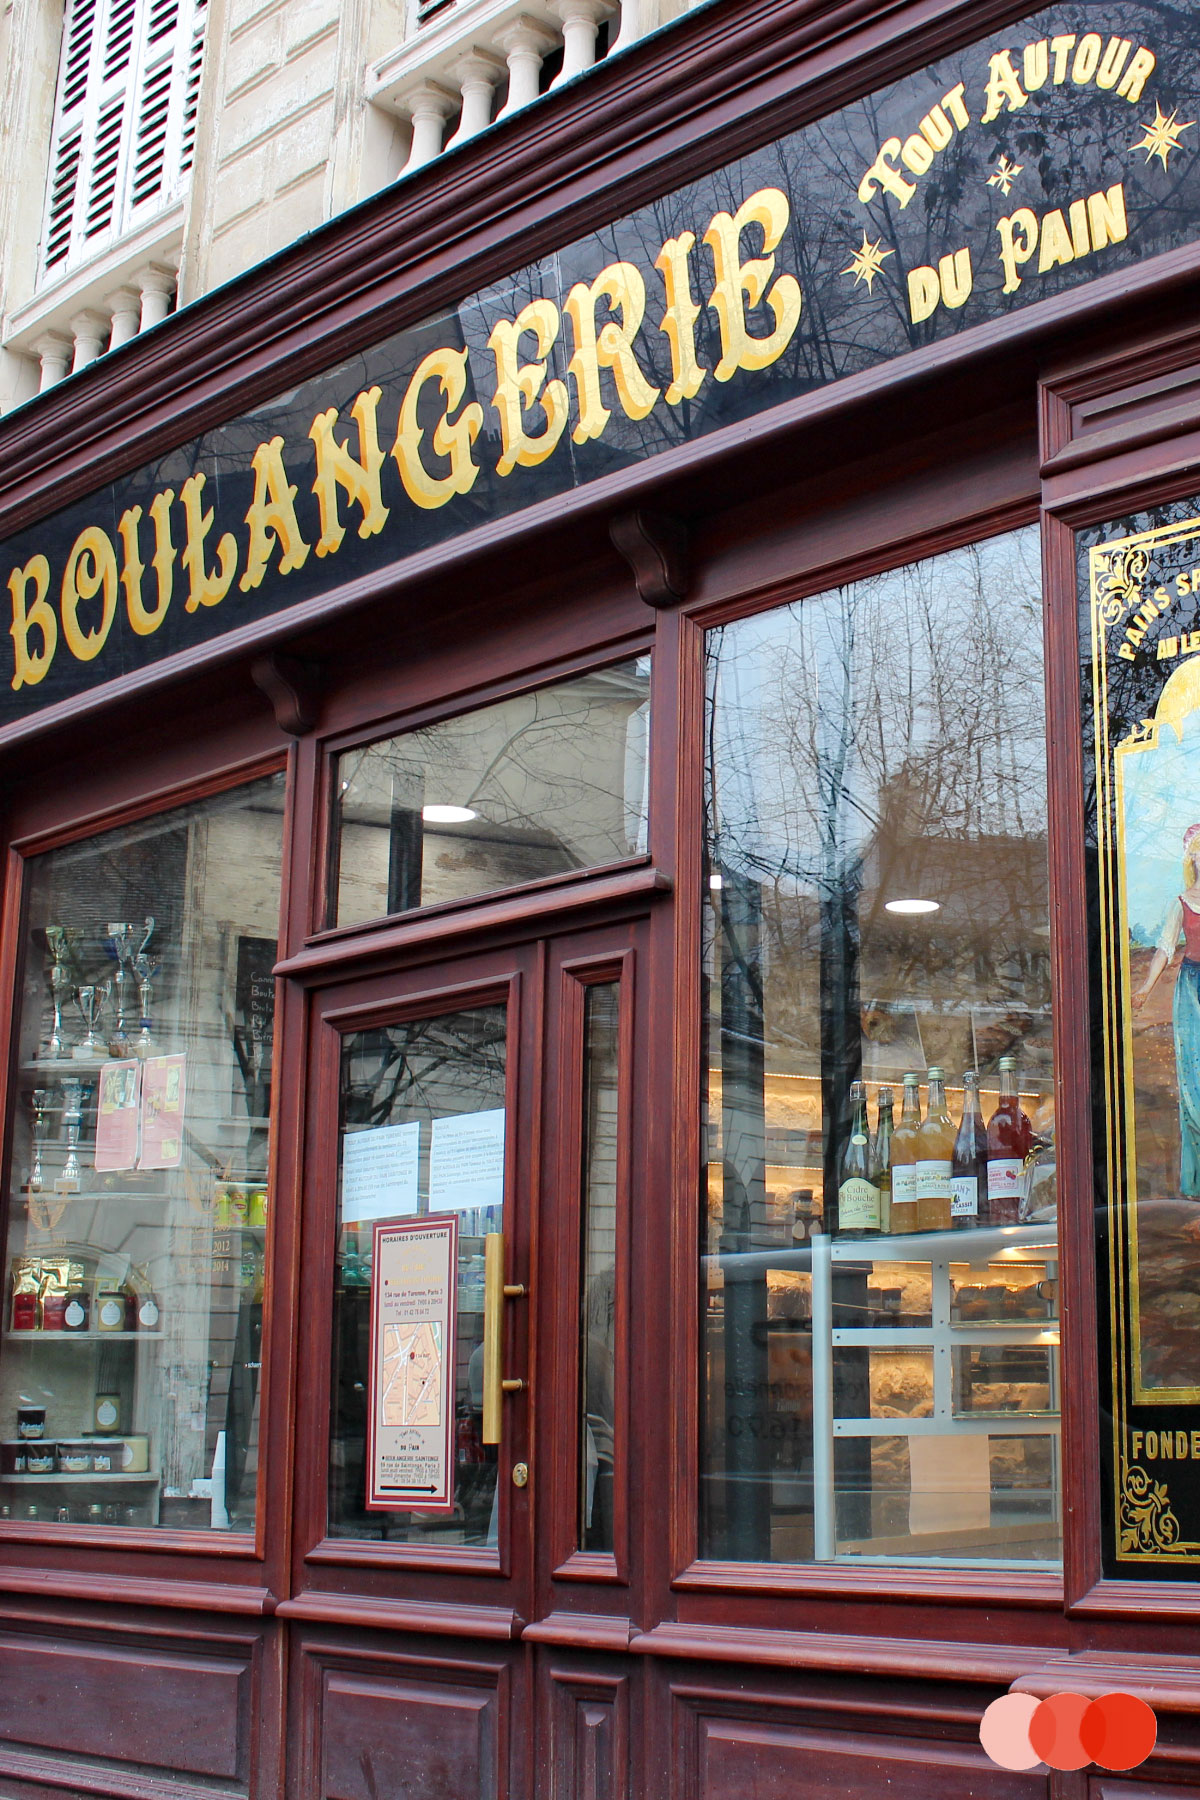 Boulangerie in Parijs